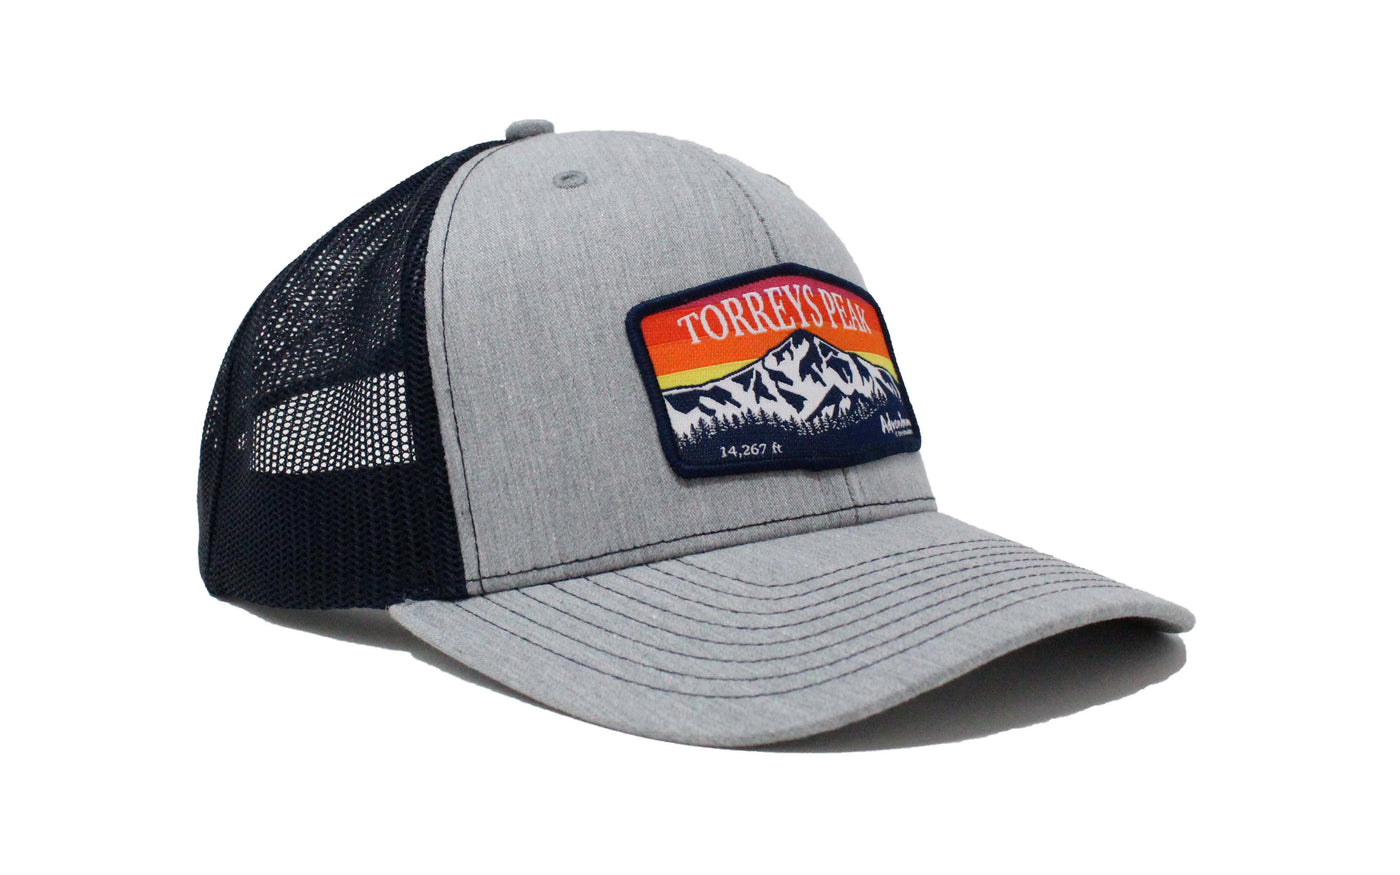 Torreys Peak Trucker Hat